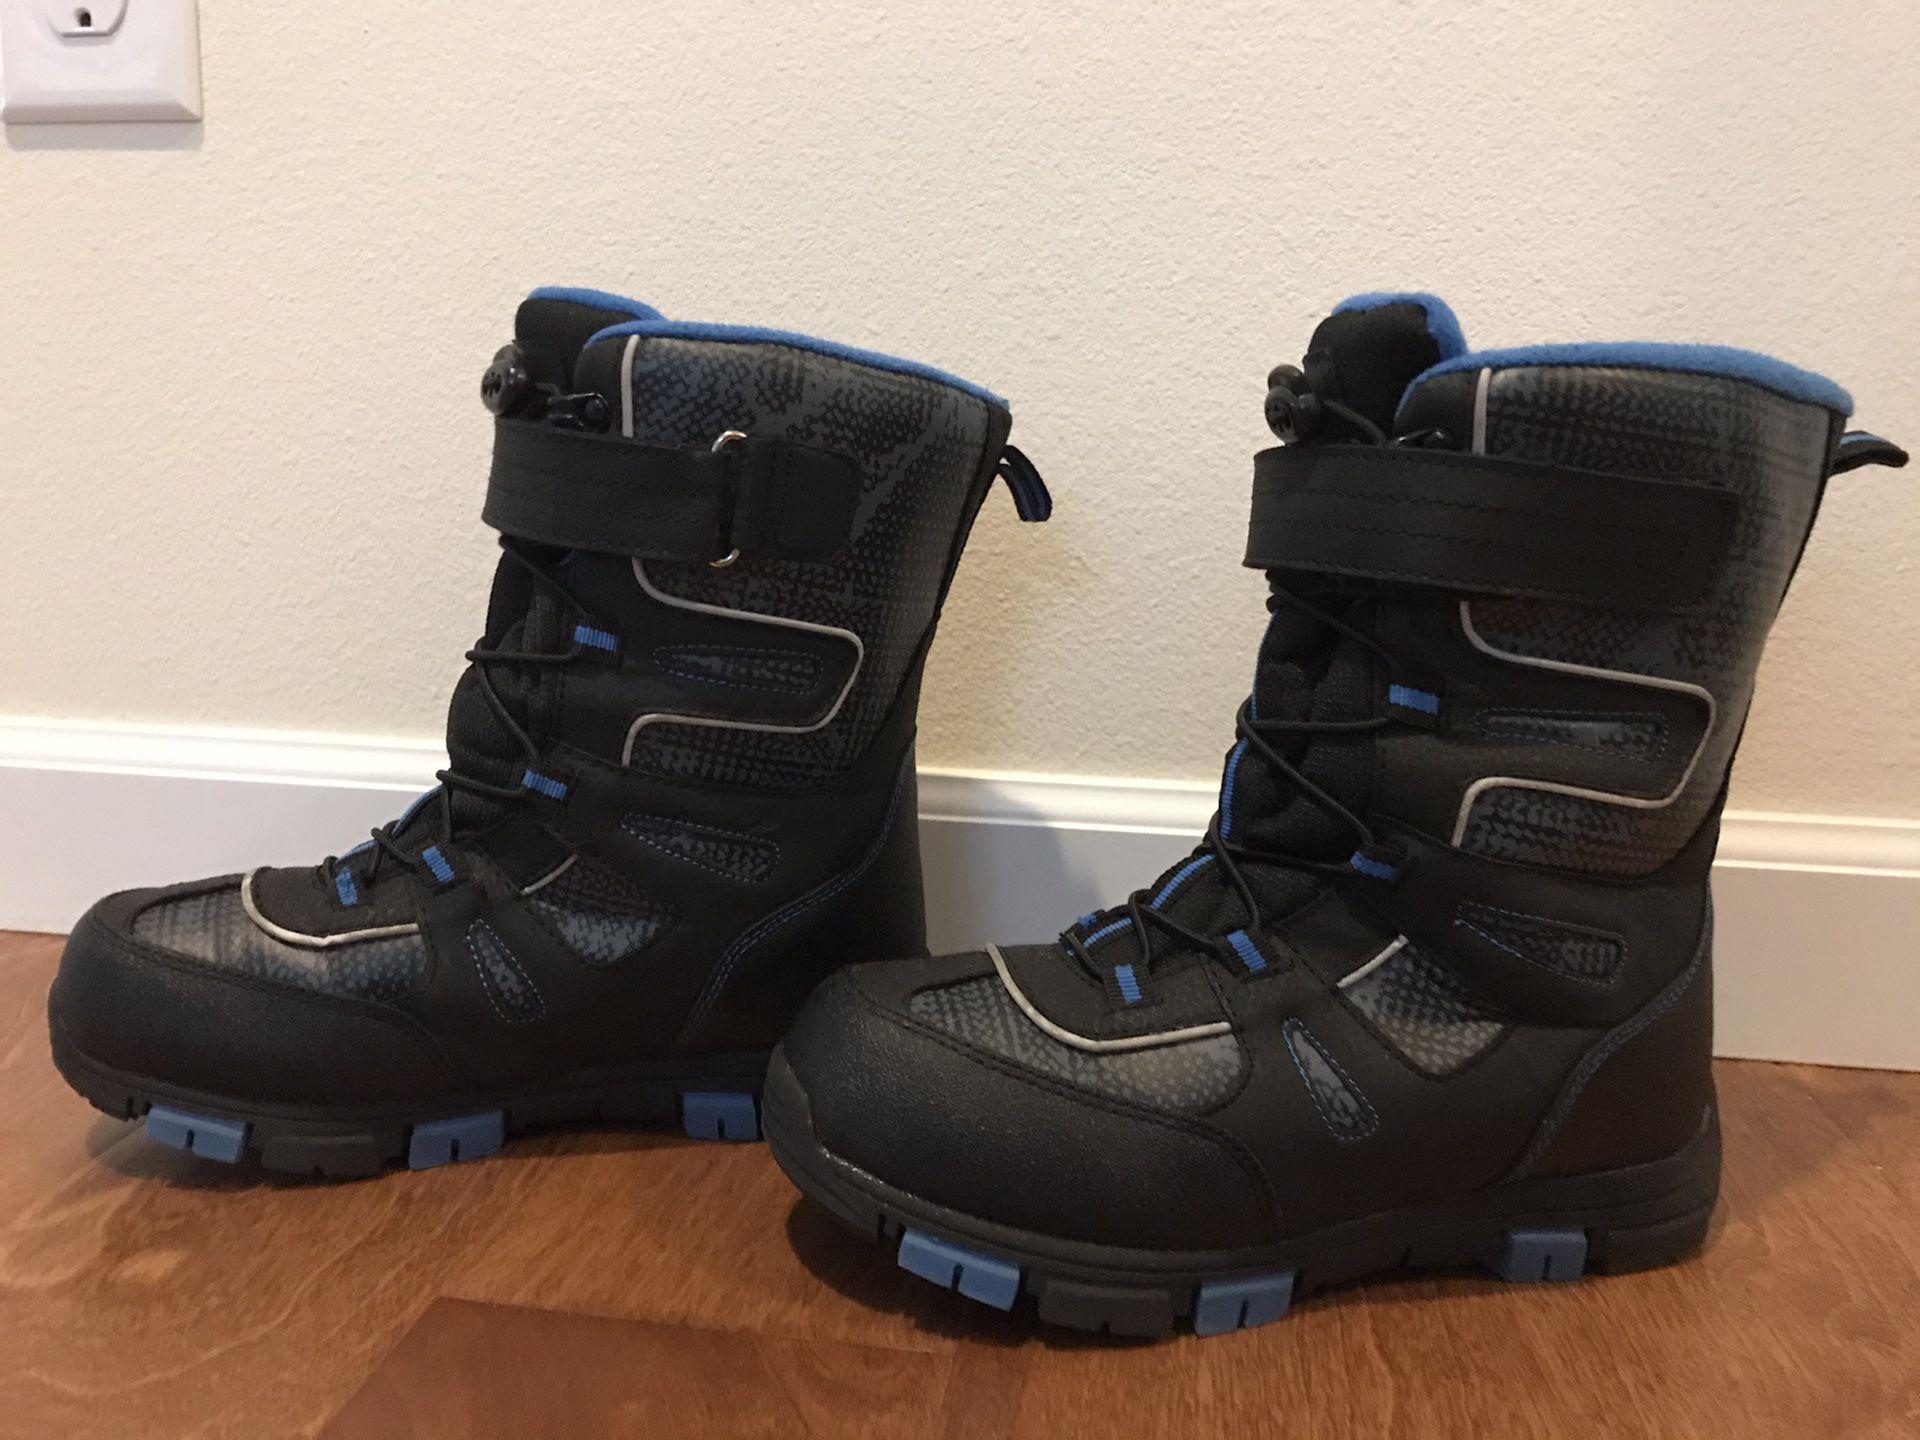 Kids Quest Snow Boots. Size 4.